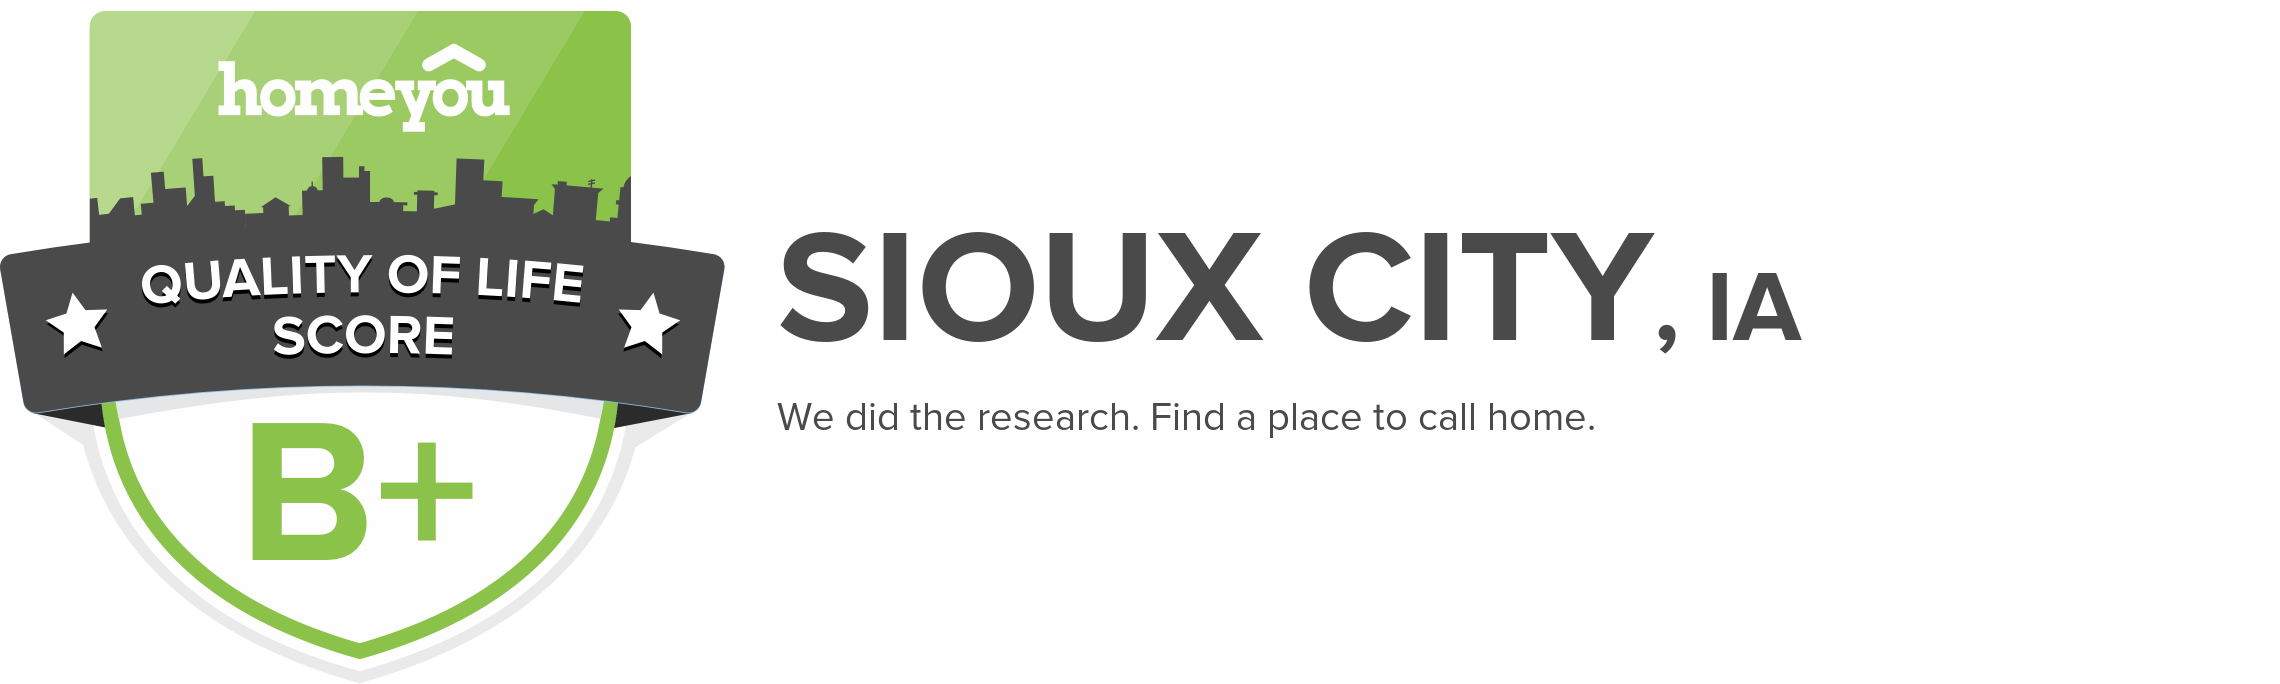 Sioux City, IA